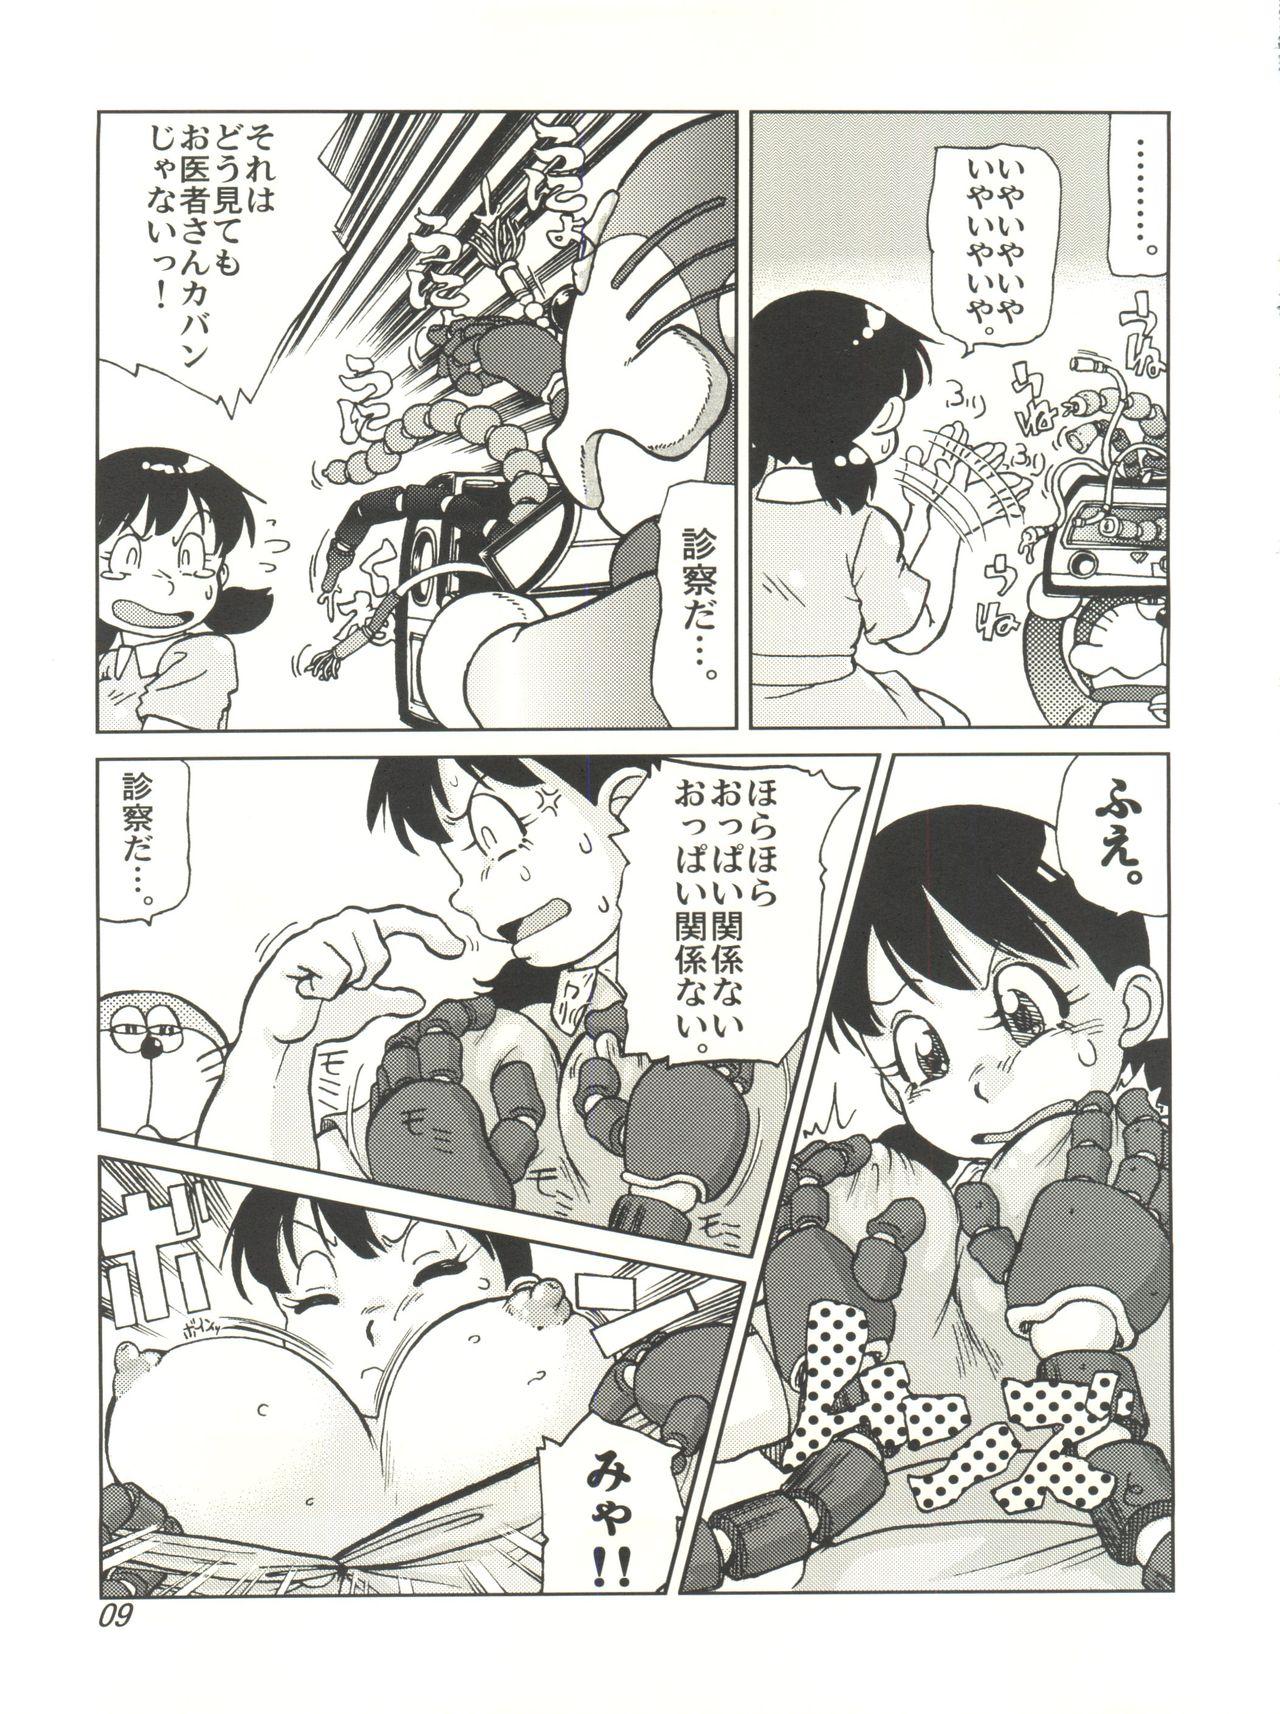 Cream COUNTER DORA SHIZUKA & KAKUGARI GUARDIAN - Doraemon Affair - Page 8